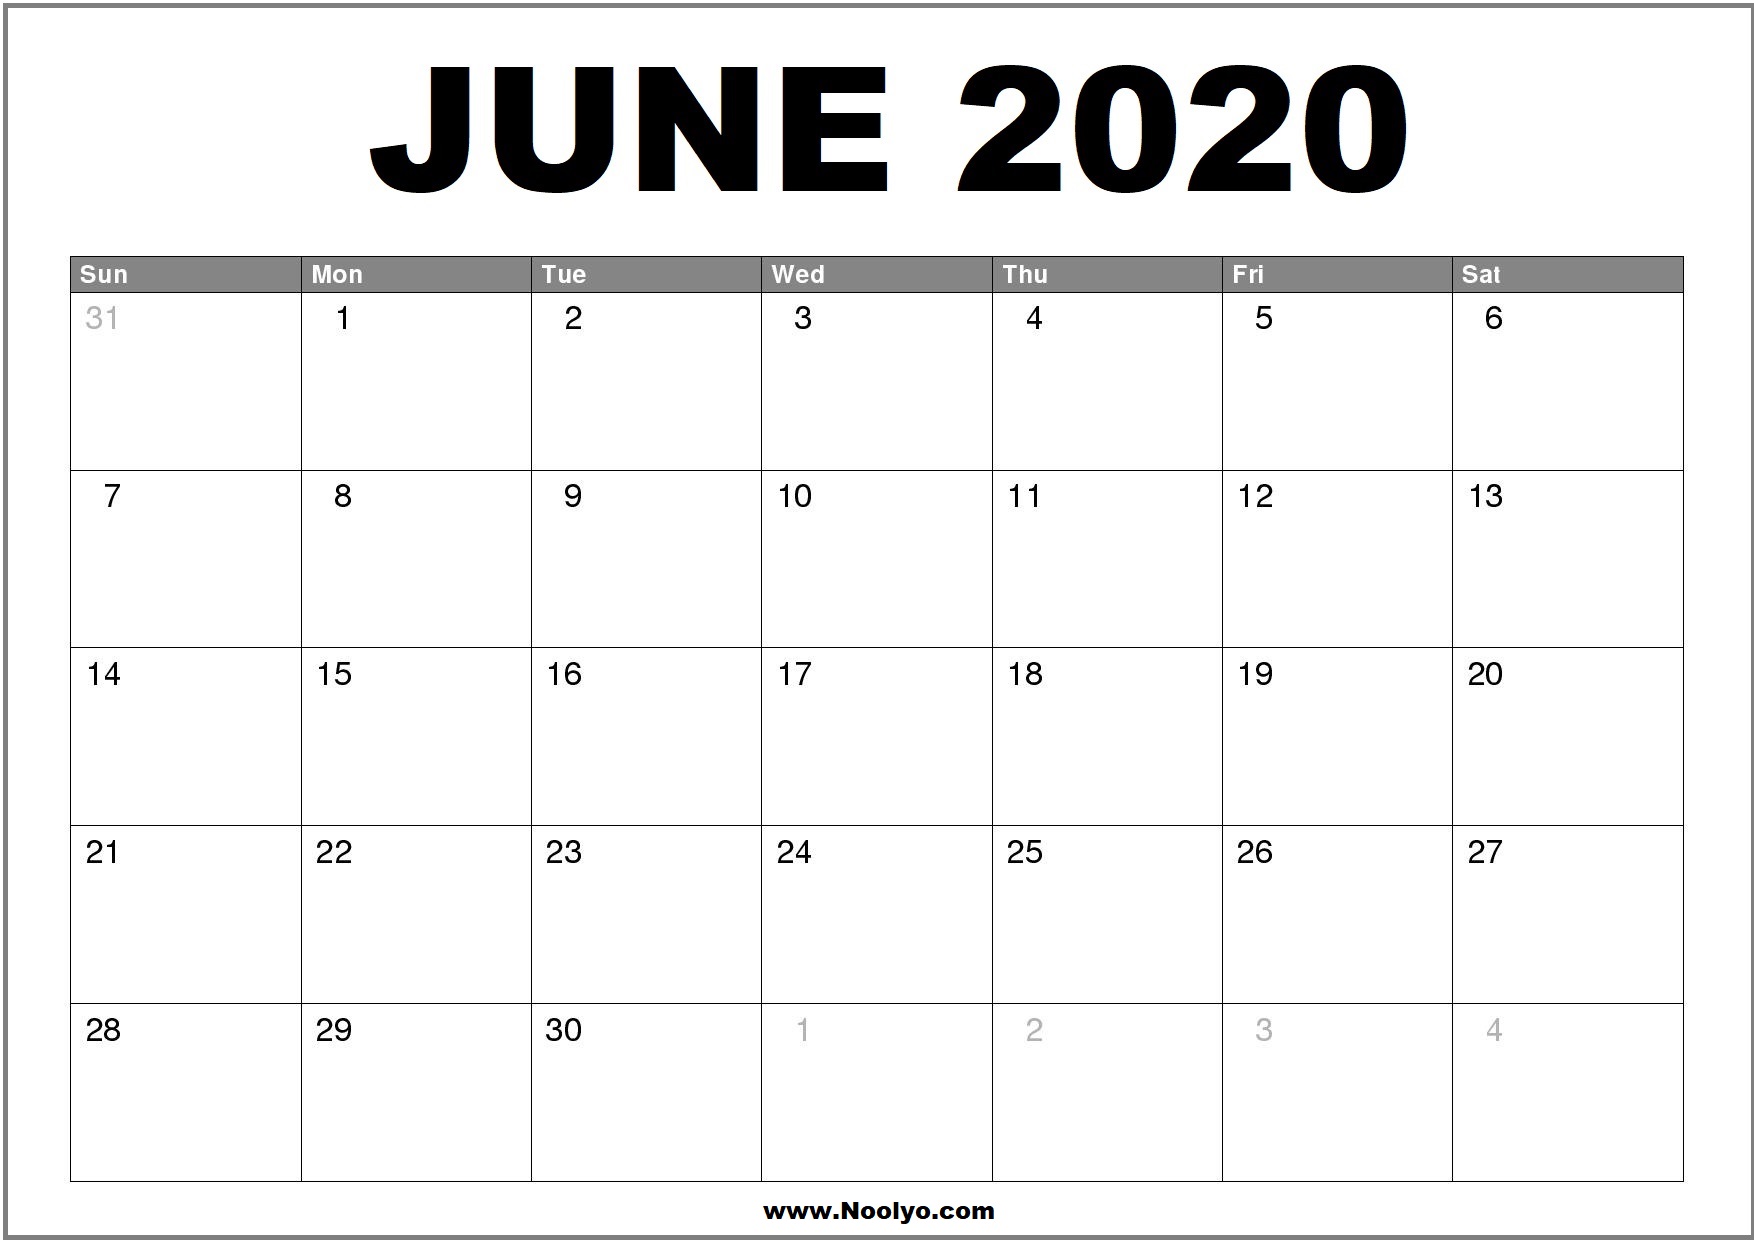 June 2020 Calendar Printable – Free Download